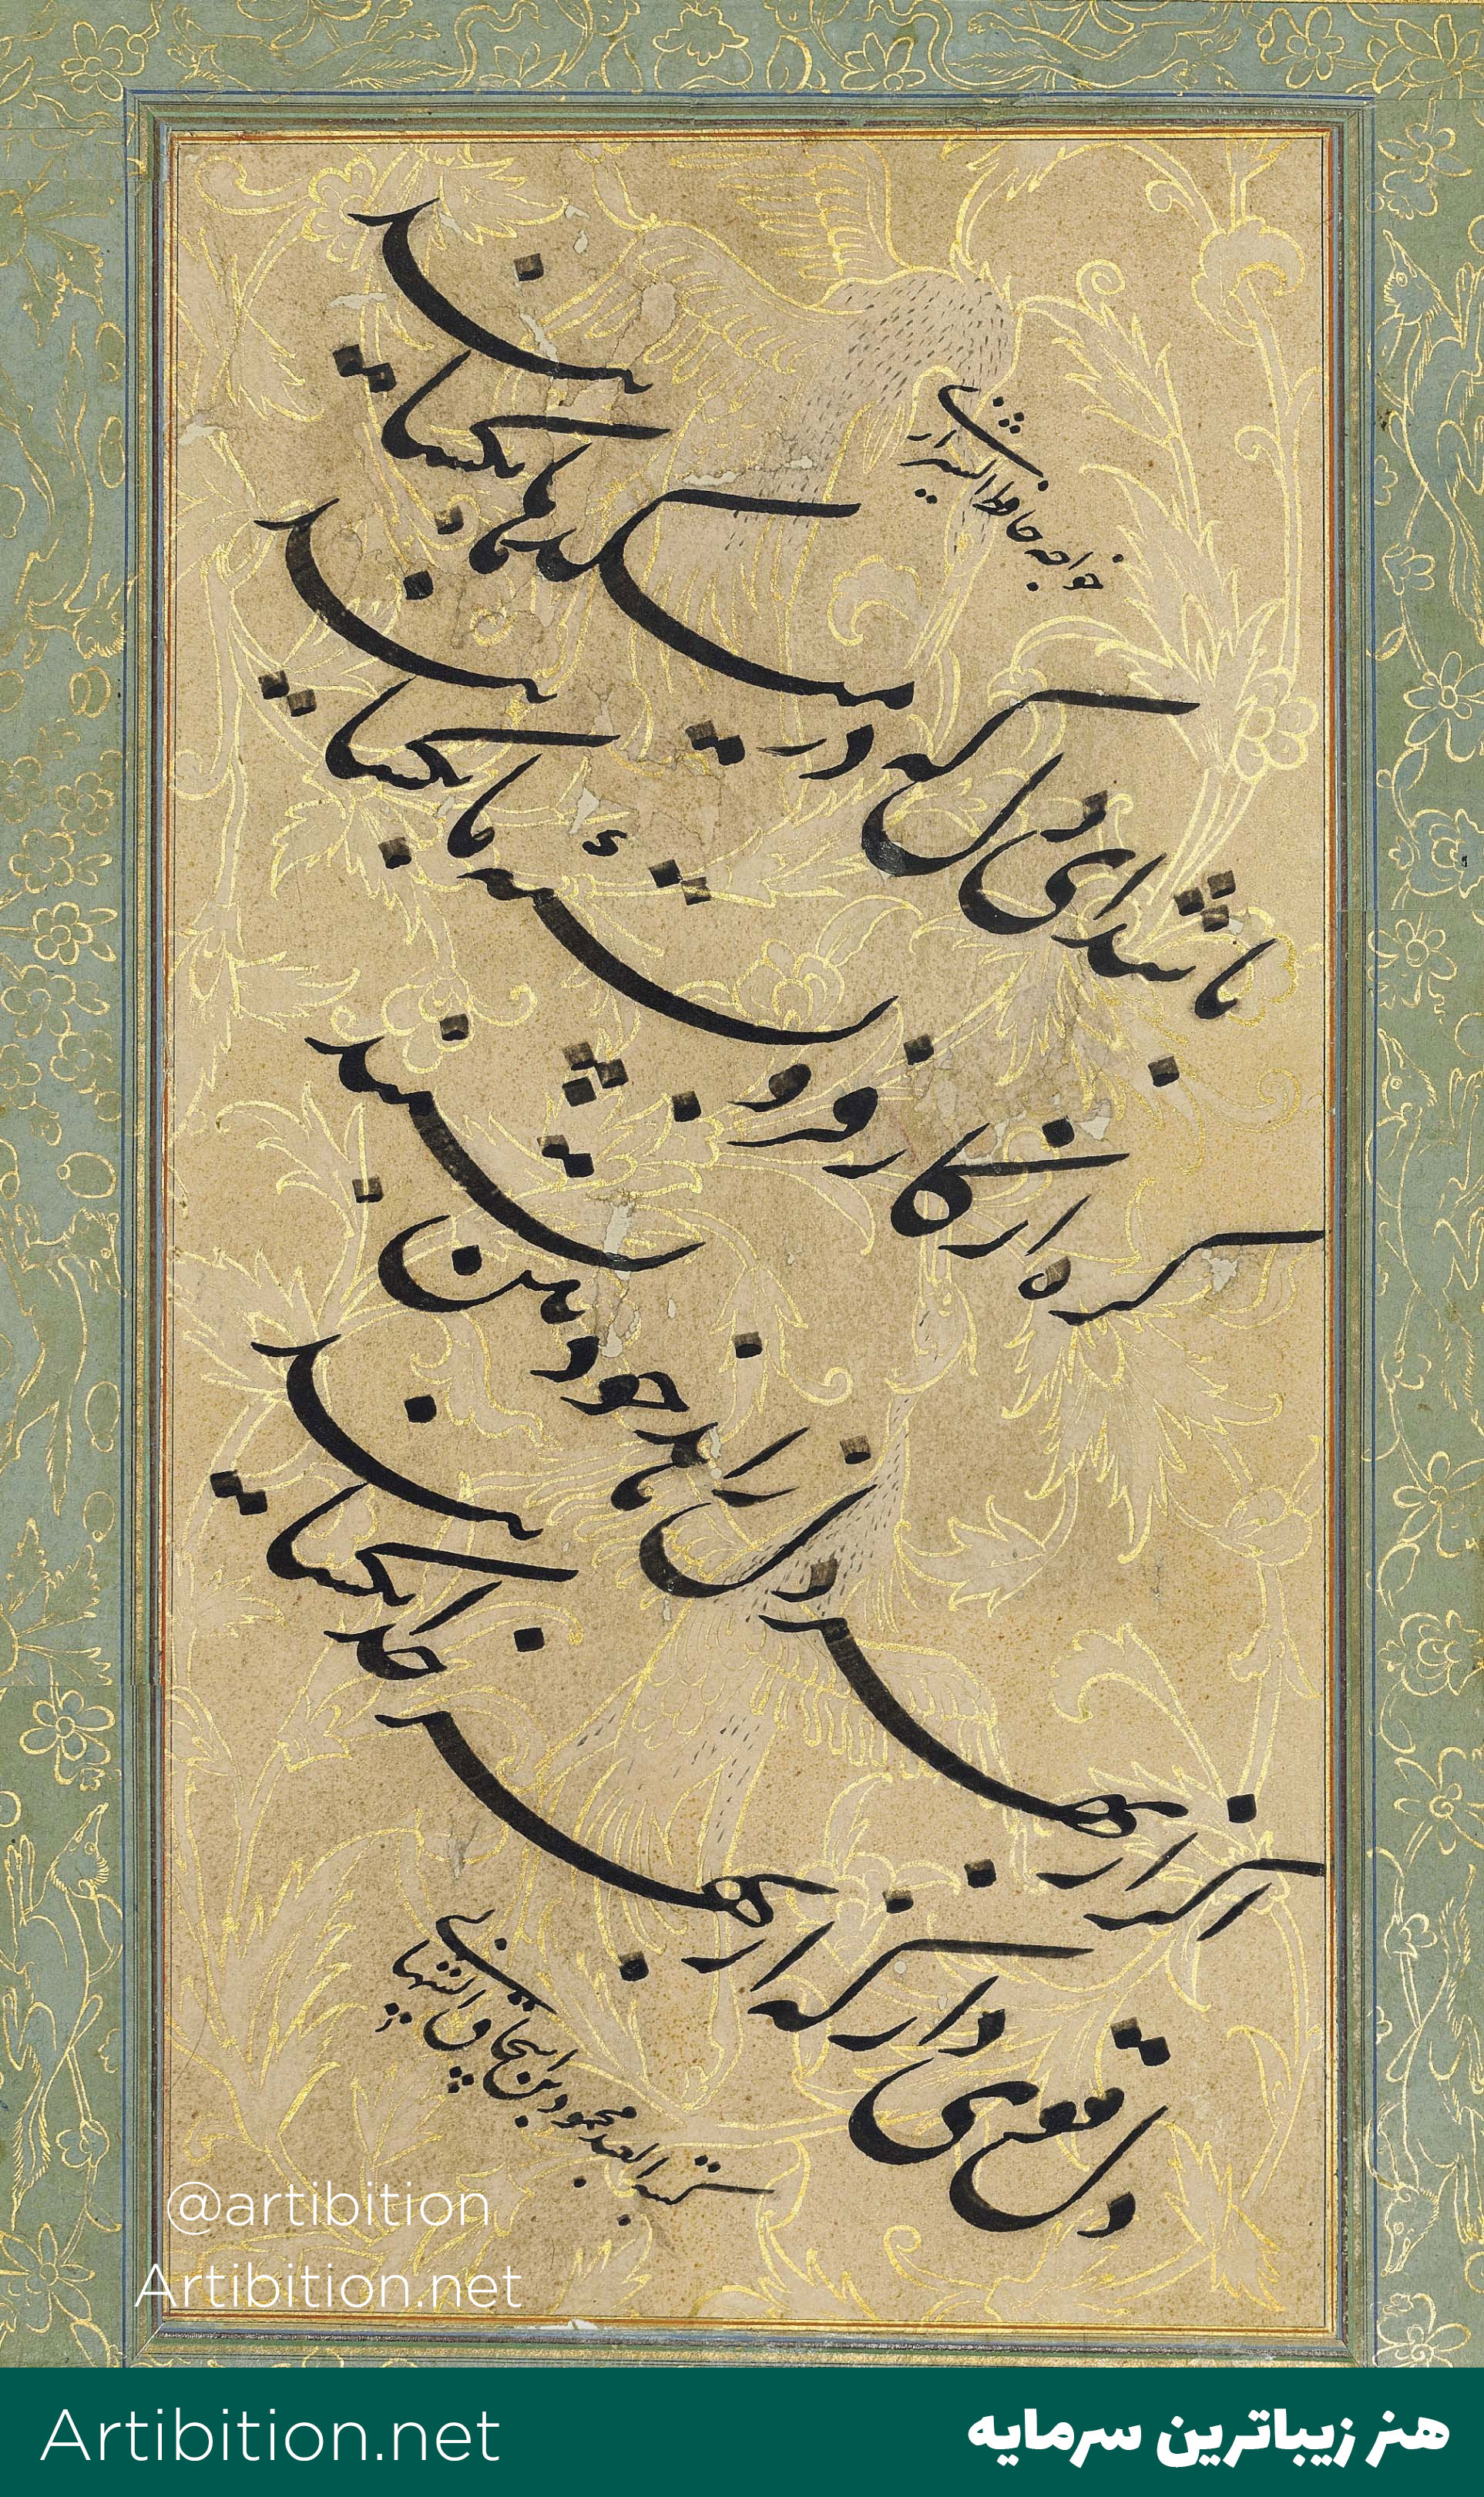 یک ورق خوشنویسی فارسی بر روی کاغذاایران دوره صفوی قرن 16